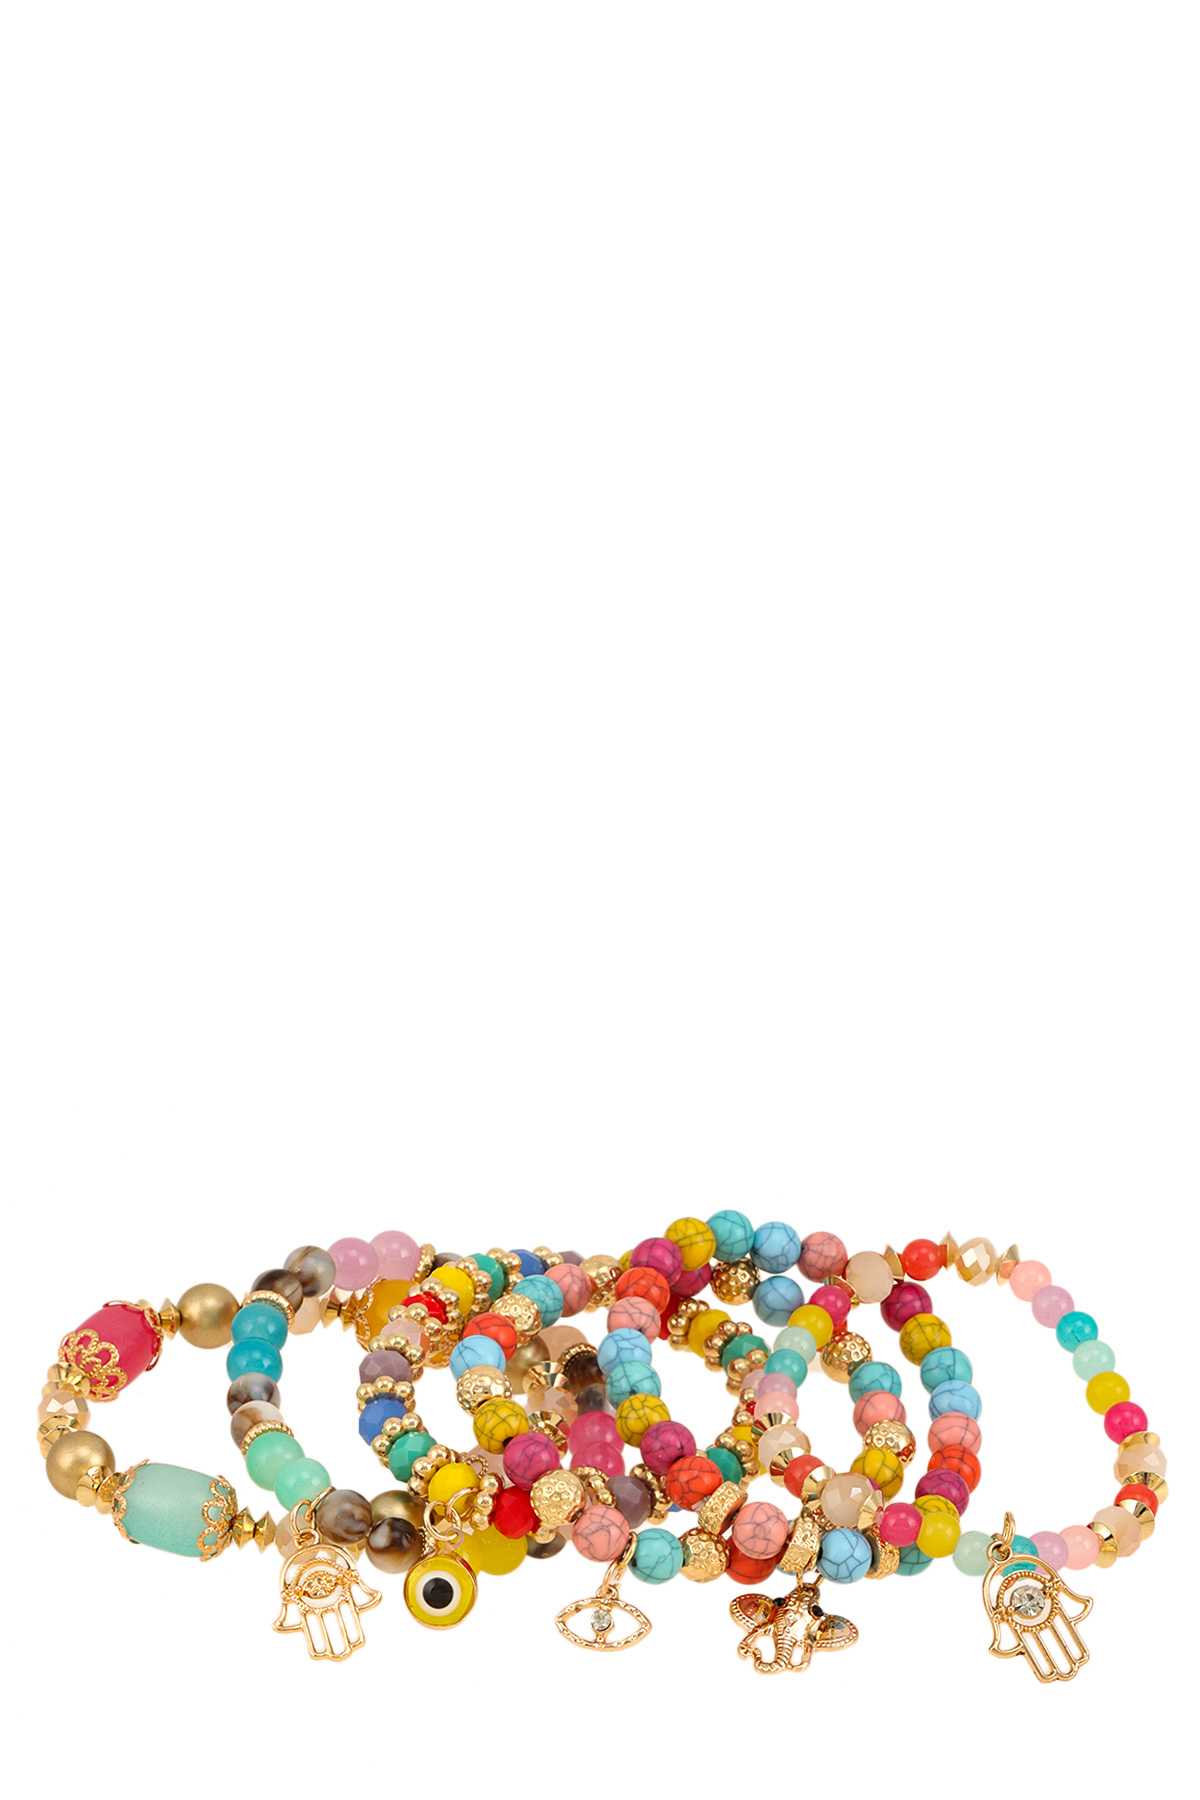 Six Bracelets with Beads and Hamsa Charm